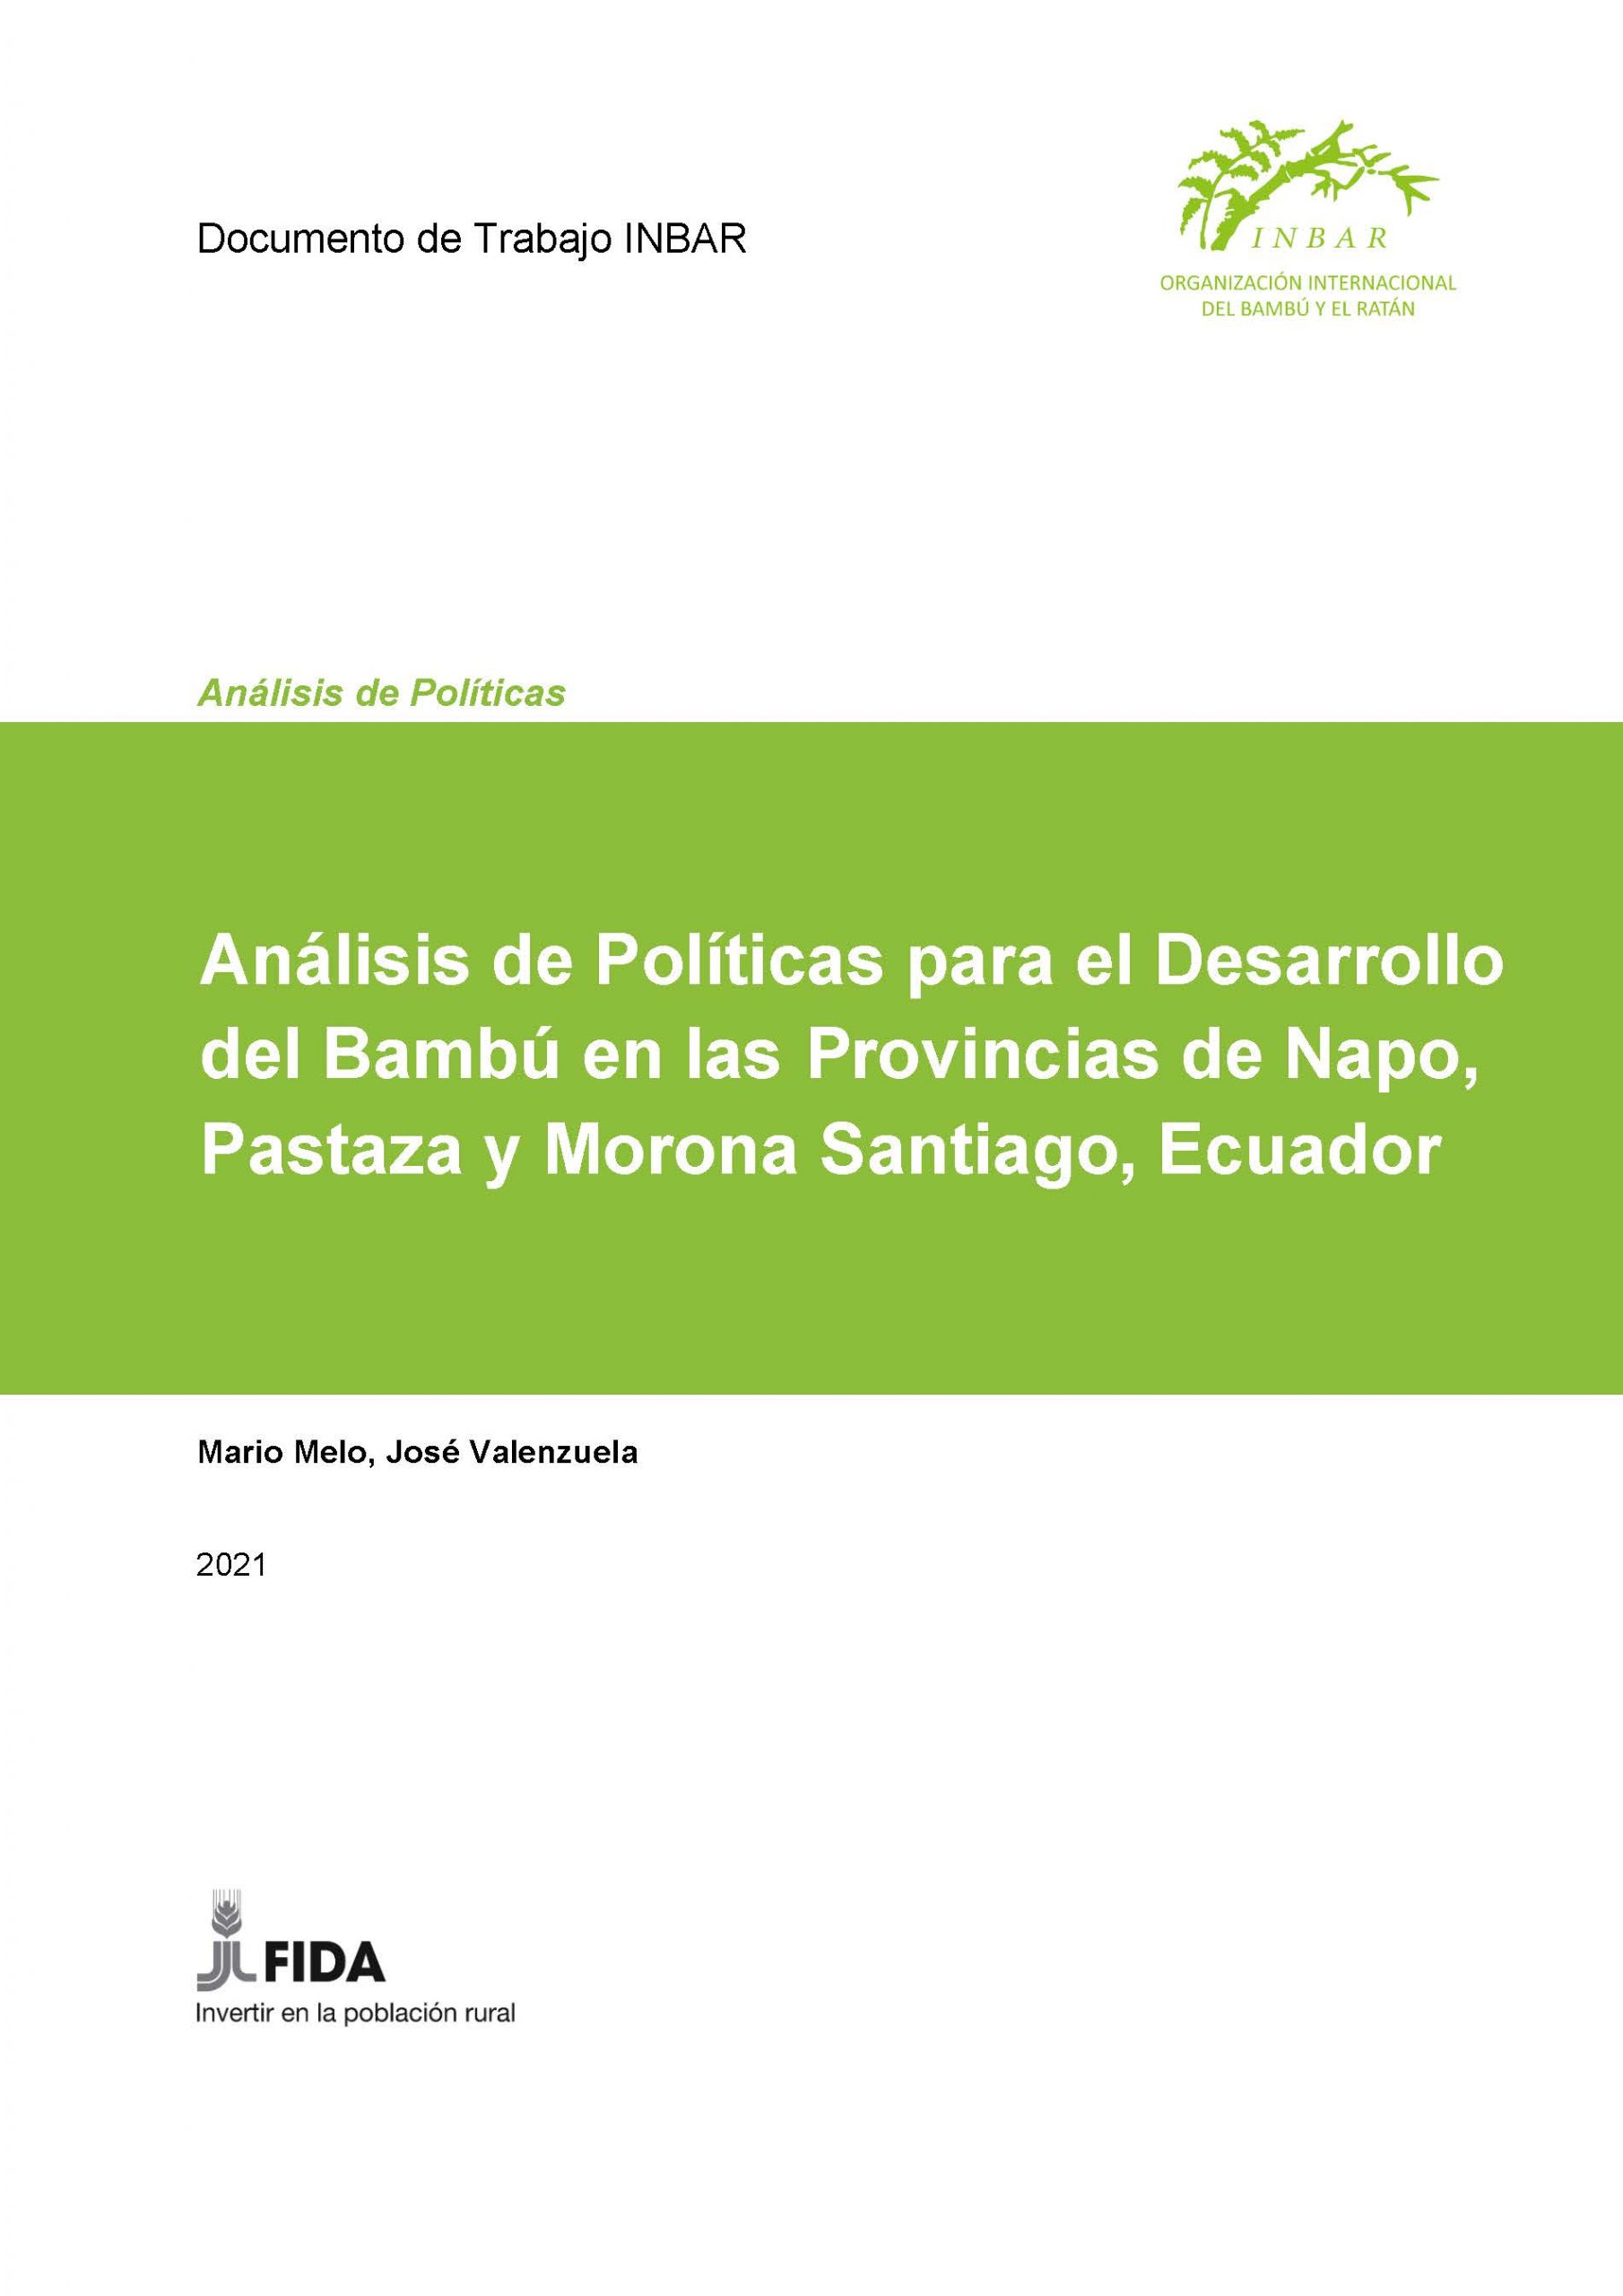 Análisis de Políticas para el Desarrollo del Bambú en las Provincias de Napo, Pastaza y Morona Santiago, Ecuador